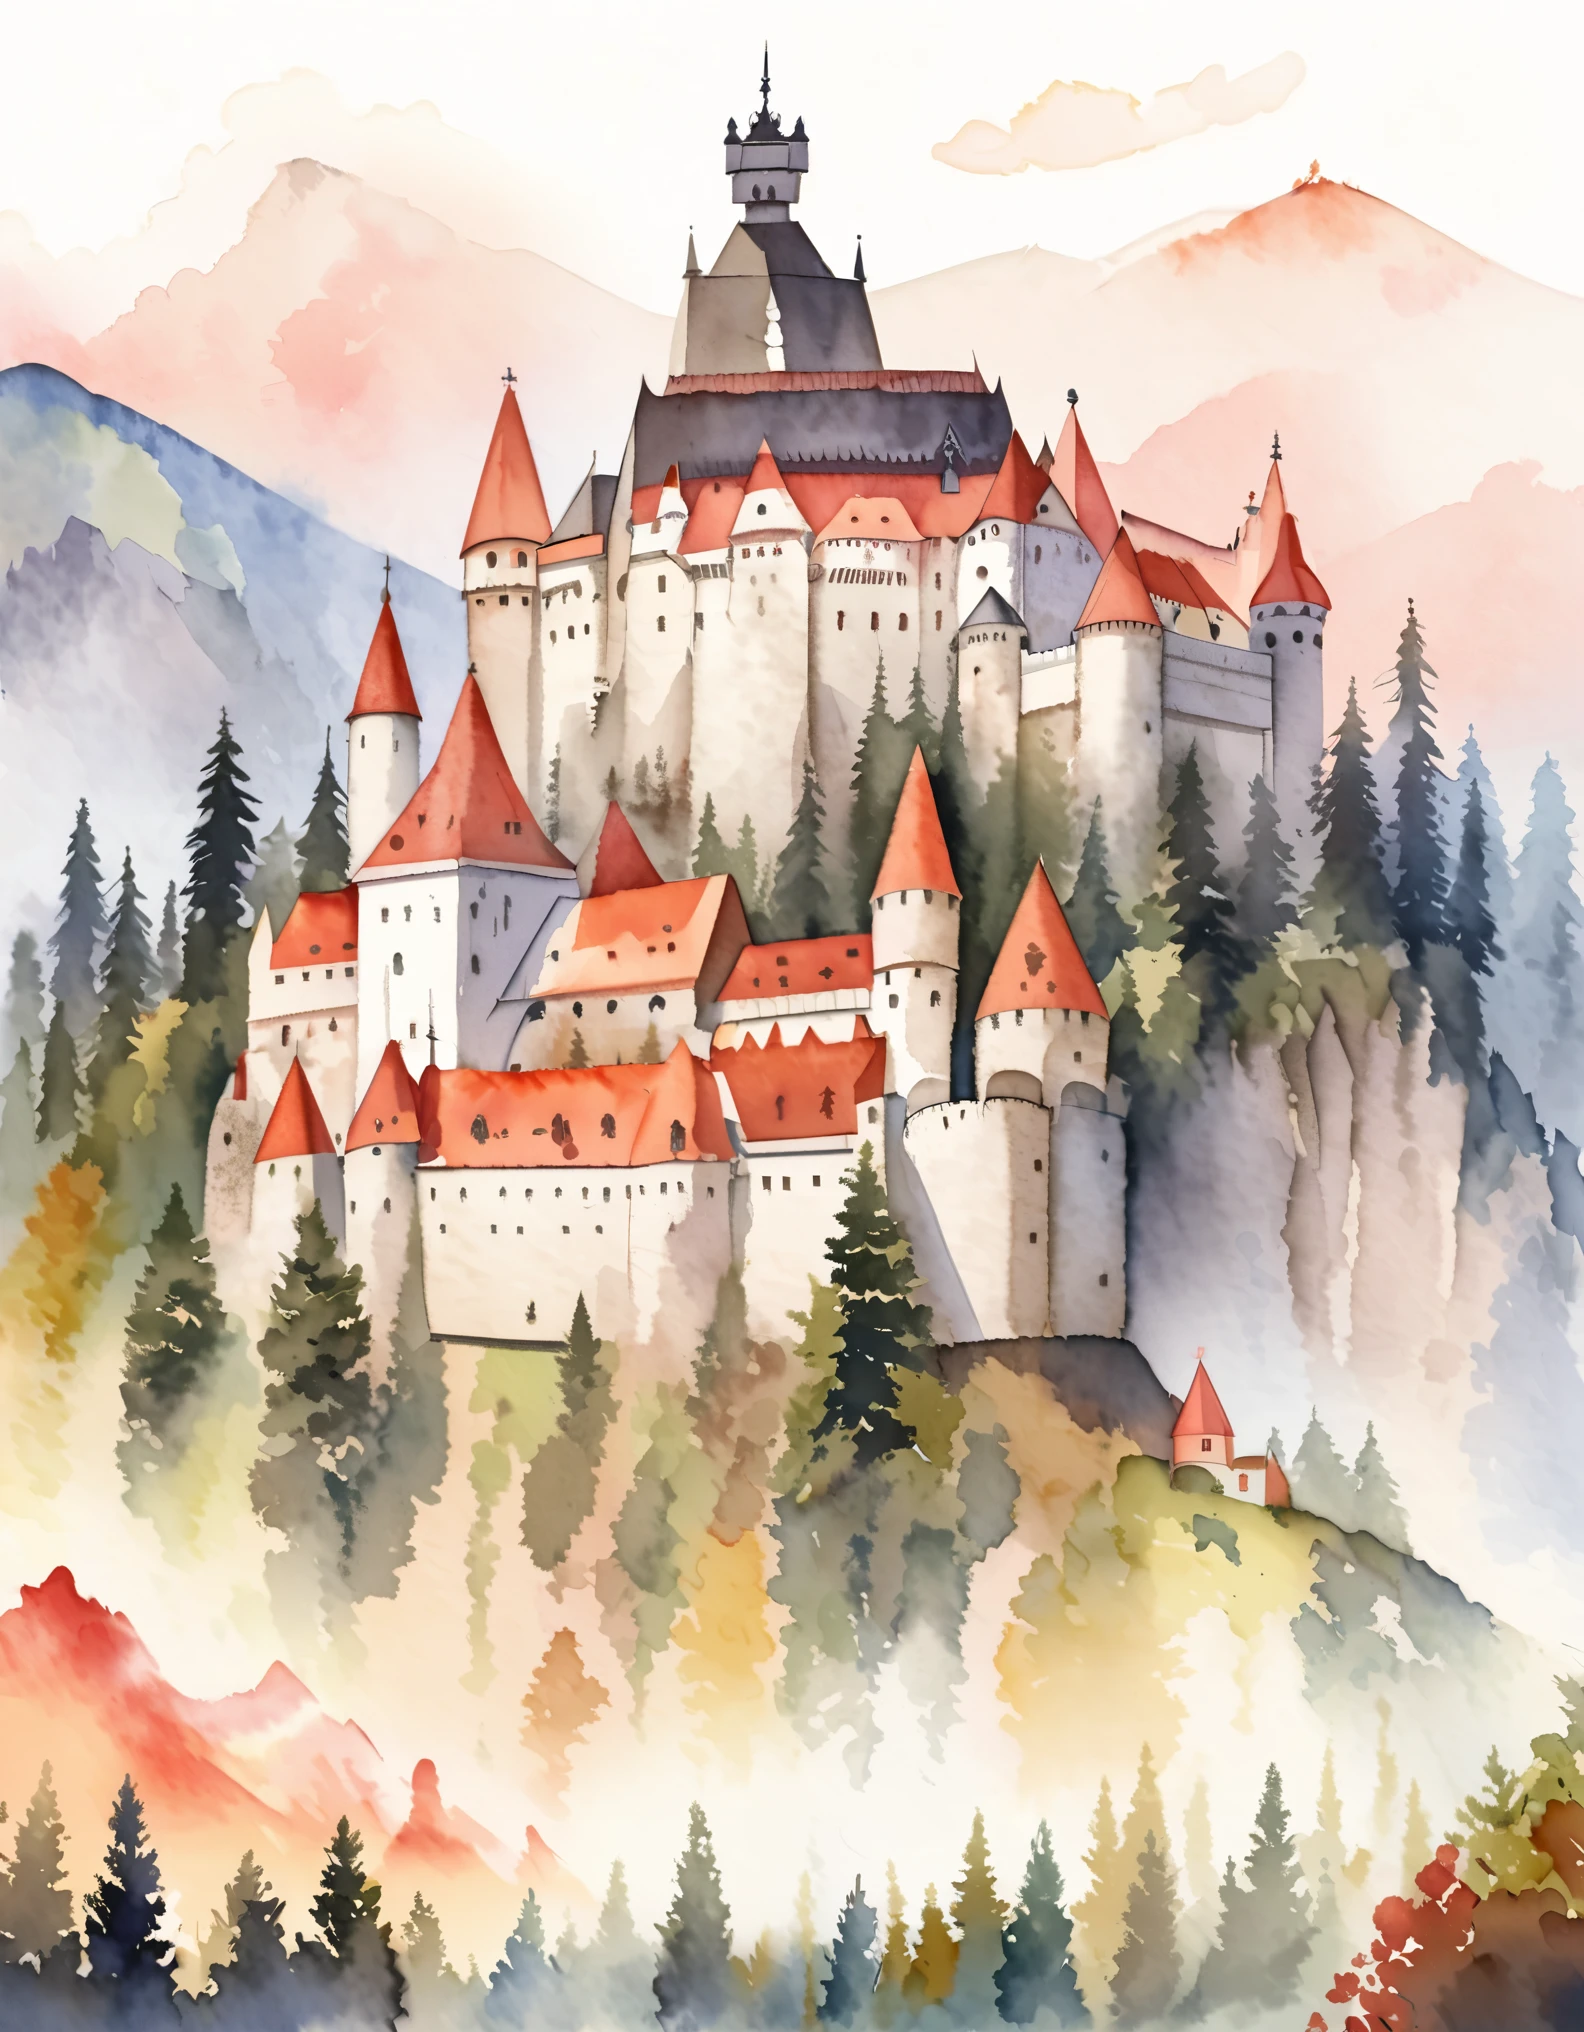 布蘭城堡, 罗马尼亚城堡, 德古拉城堡, 傳說與奧秘, 山顶, 水彩:1.2, 異想天開又精緻, 就像兒童插畫一樣&#39;书, 溫柔的筆觸, 暗淡, 淺色營造出夢幻般的外觀.